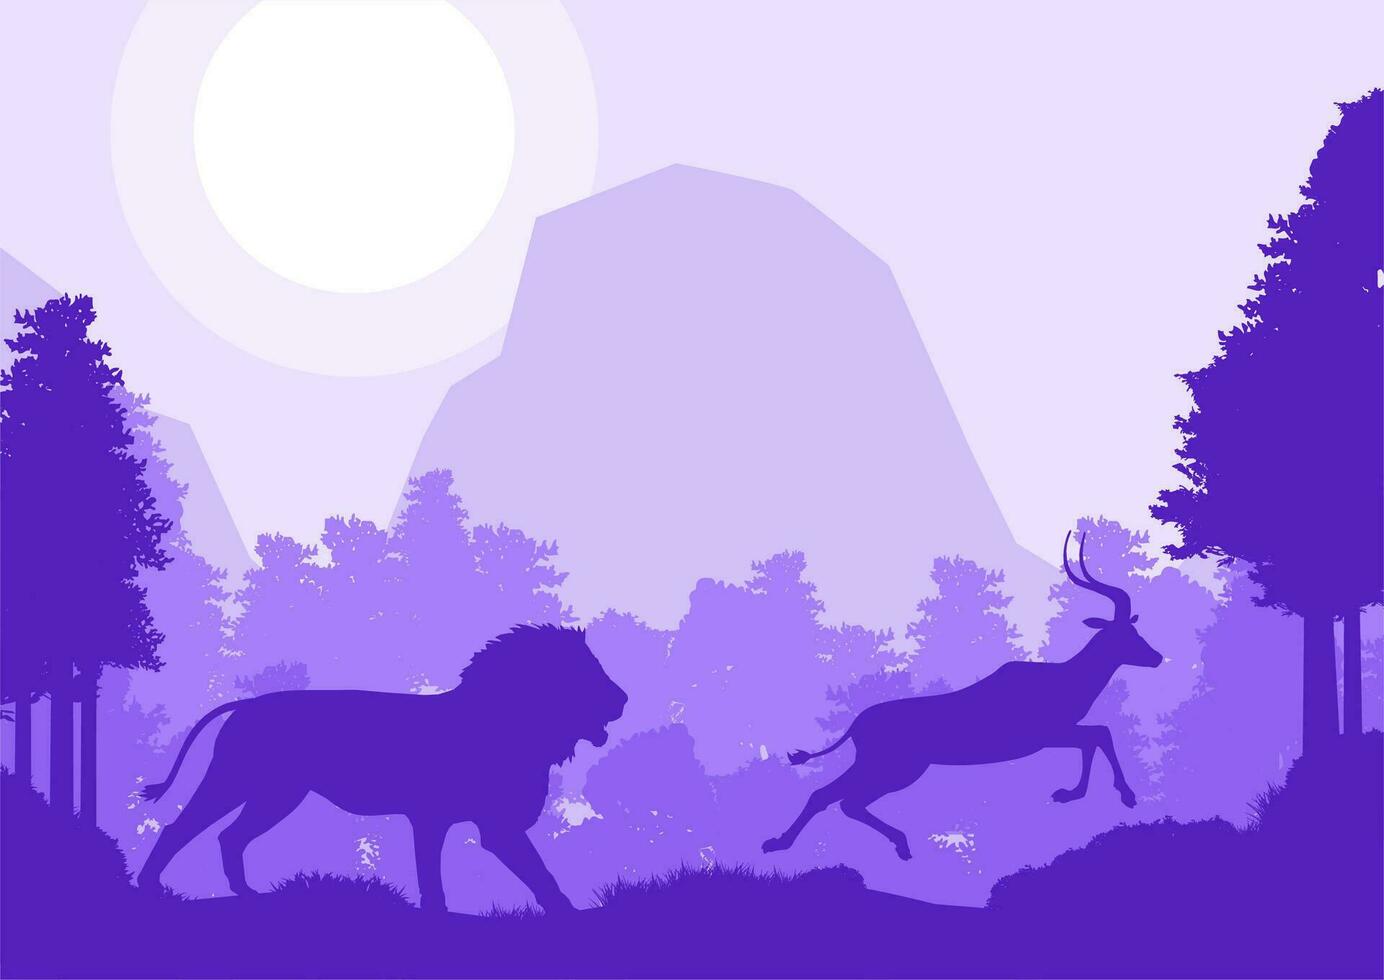 lejon jaga impala rådjur djur- silhuett skog berg landskap platt design vektor illustration